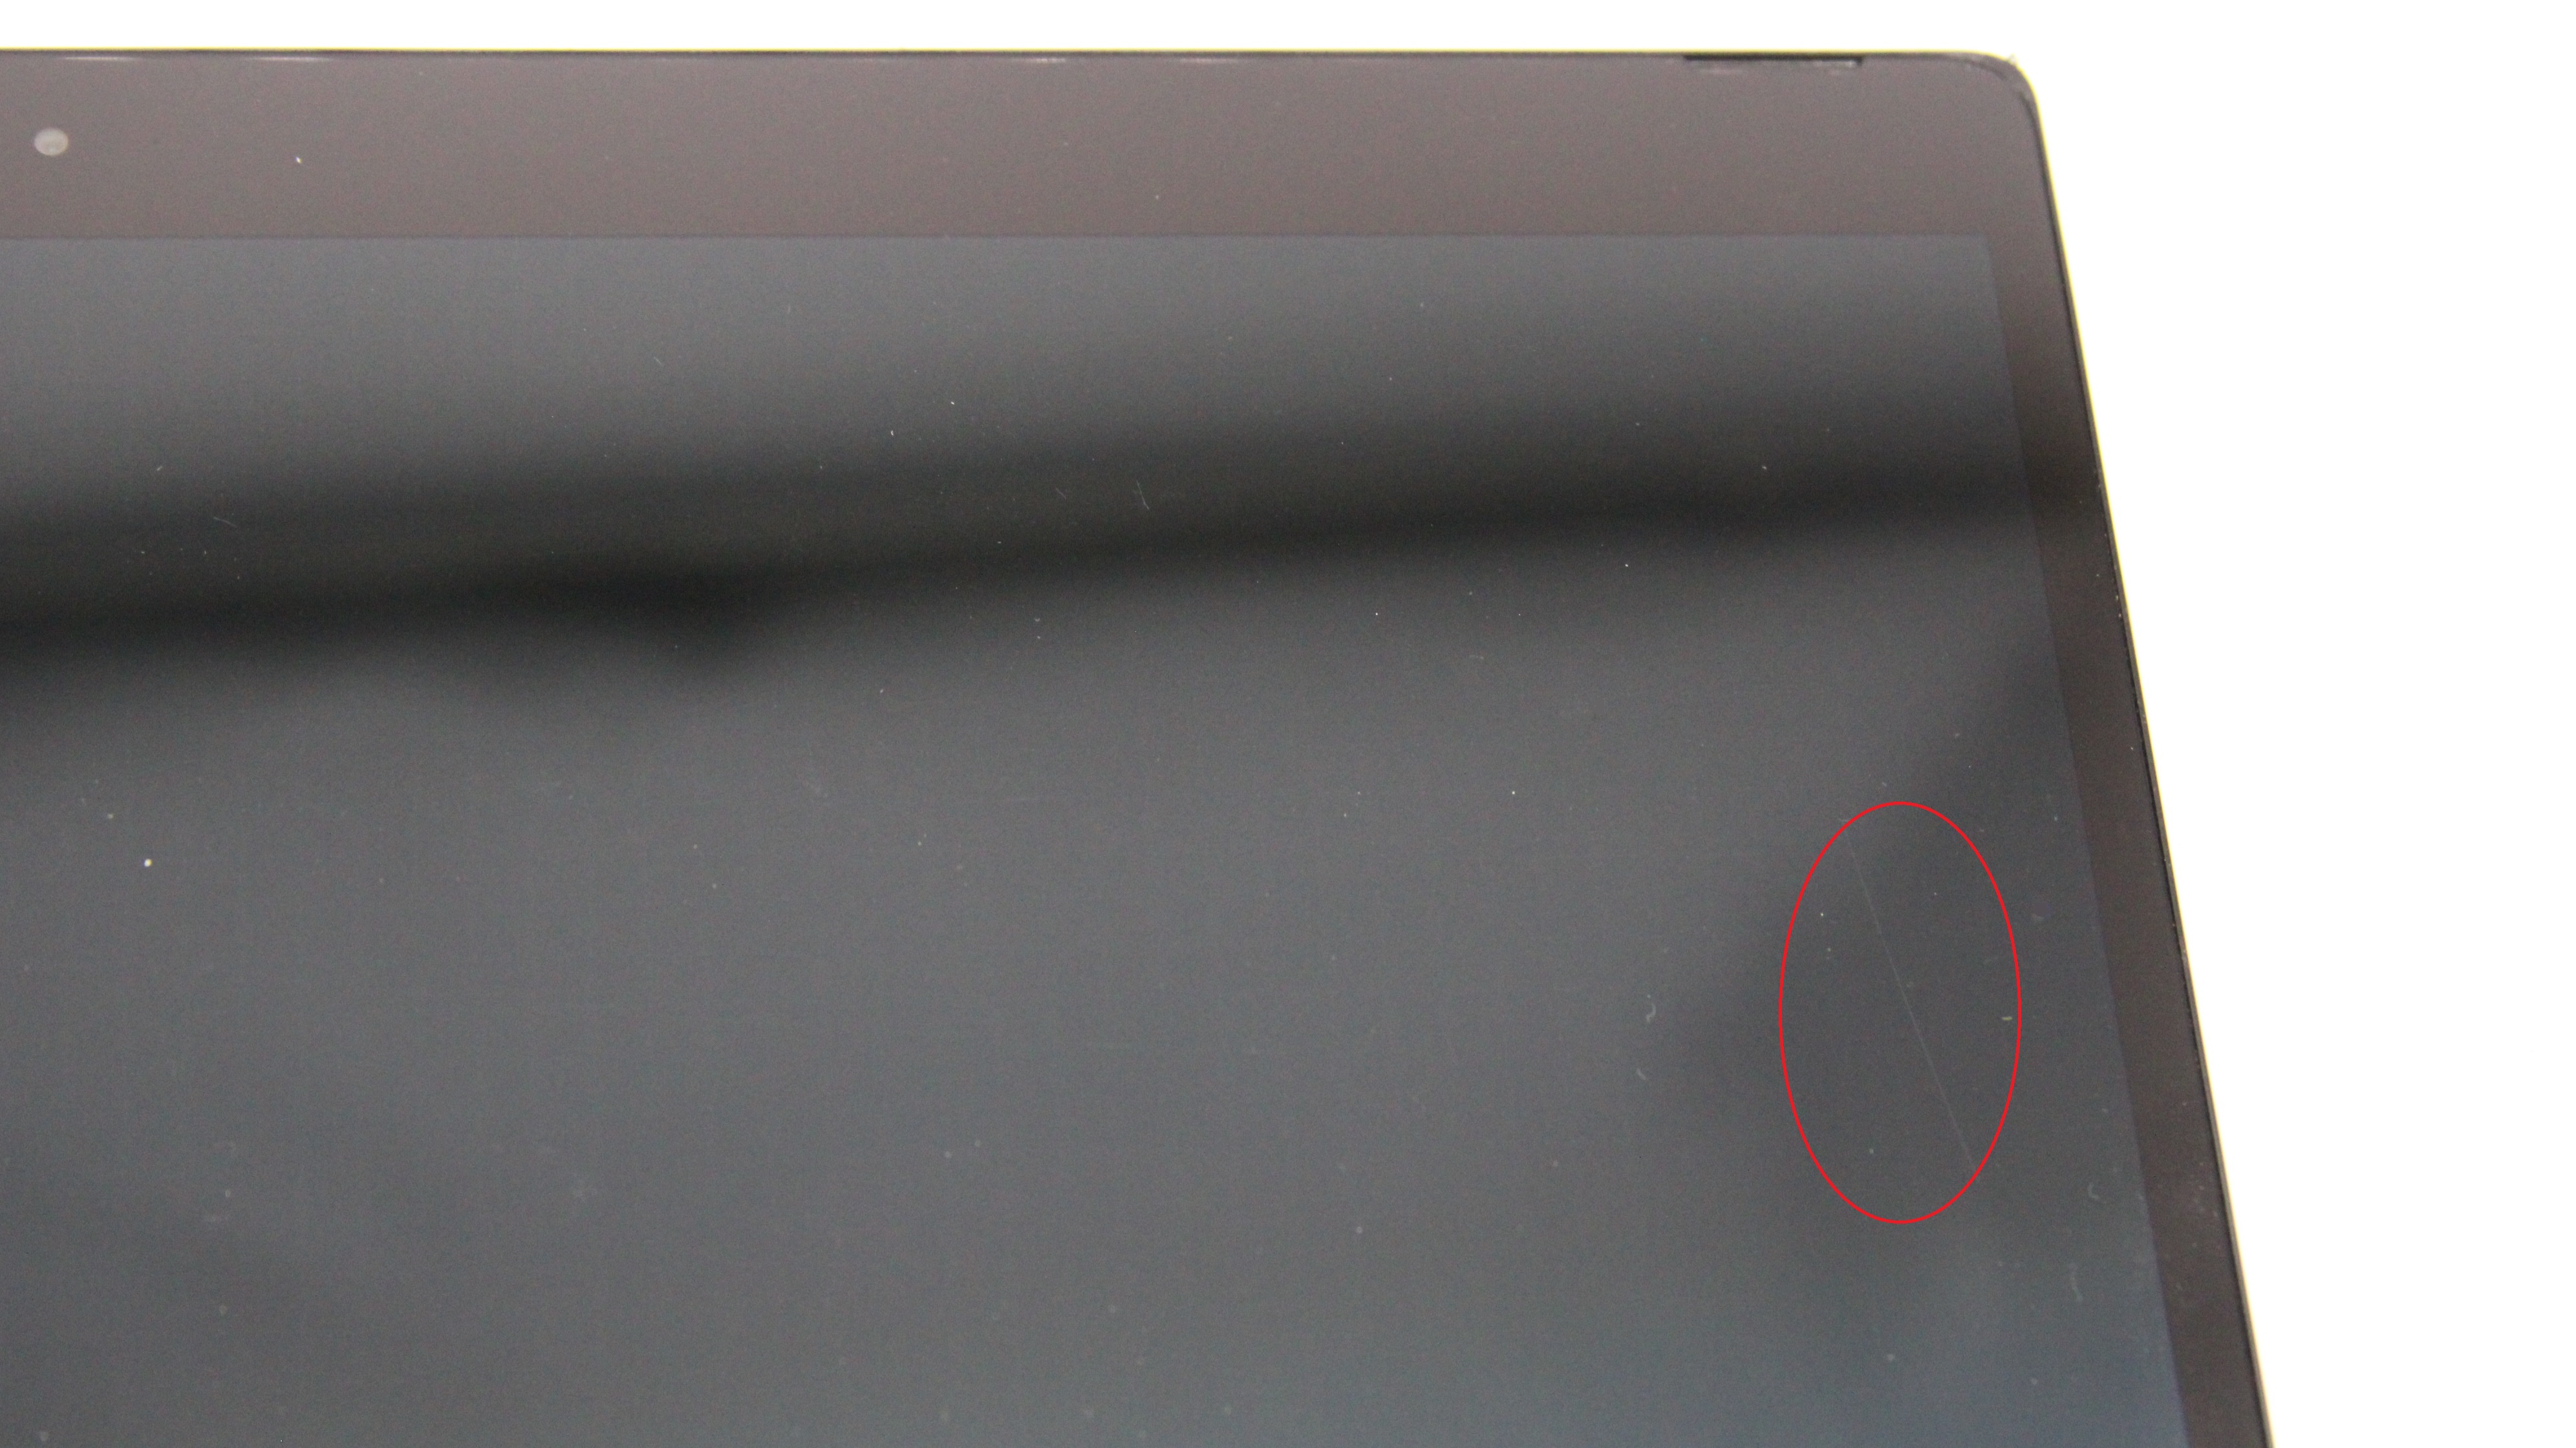 Lenovo ThinkPad Yoga S1 12 2in1 I5-4300U 8GB RAM 256GB SSD W10